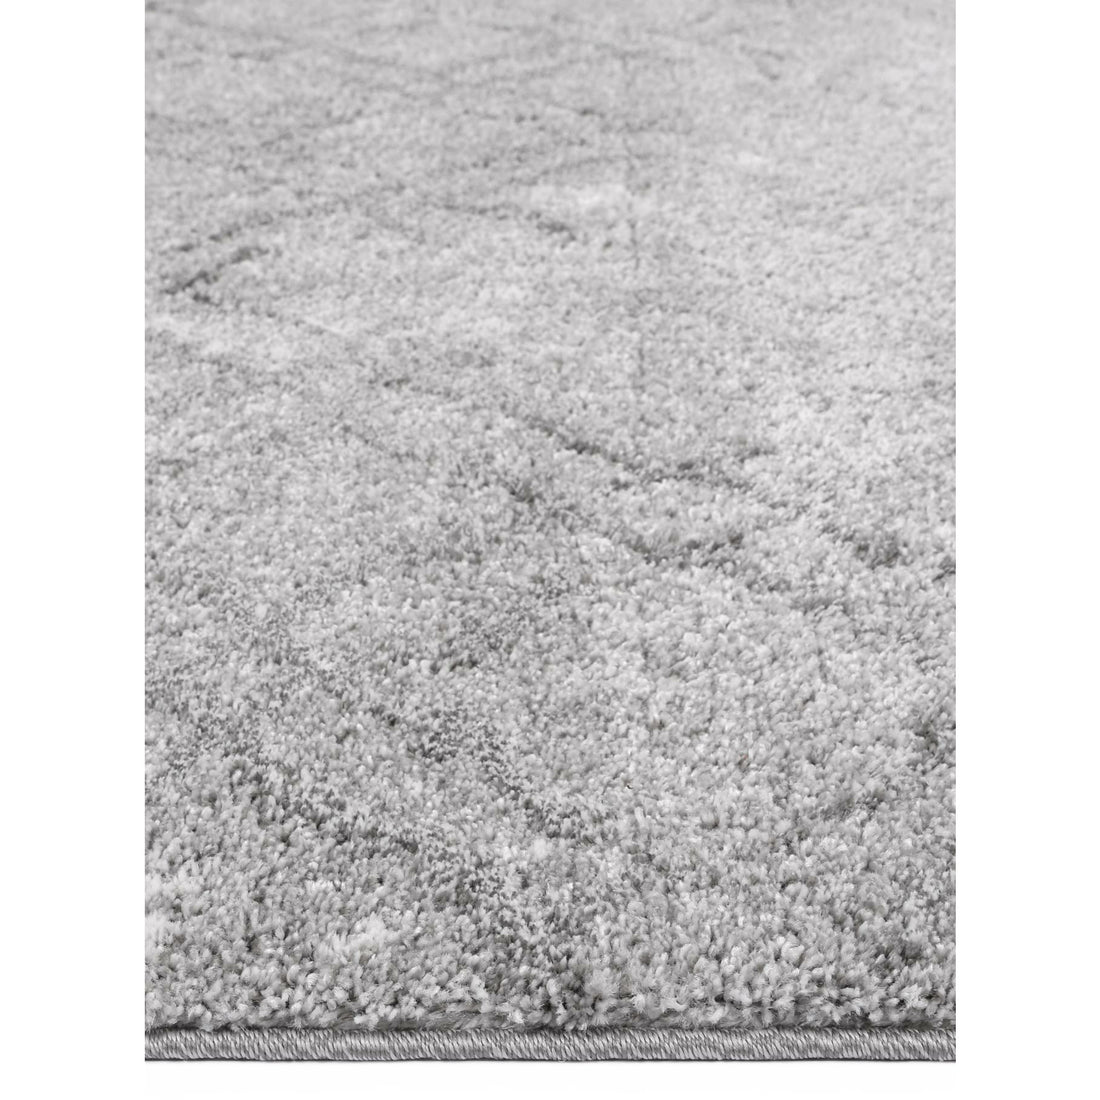 Yuzil Grey Transitional Rug 120x170cm